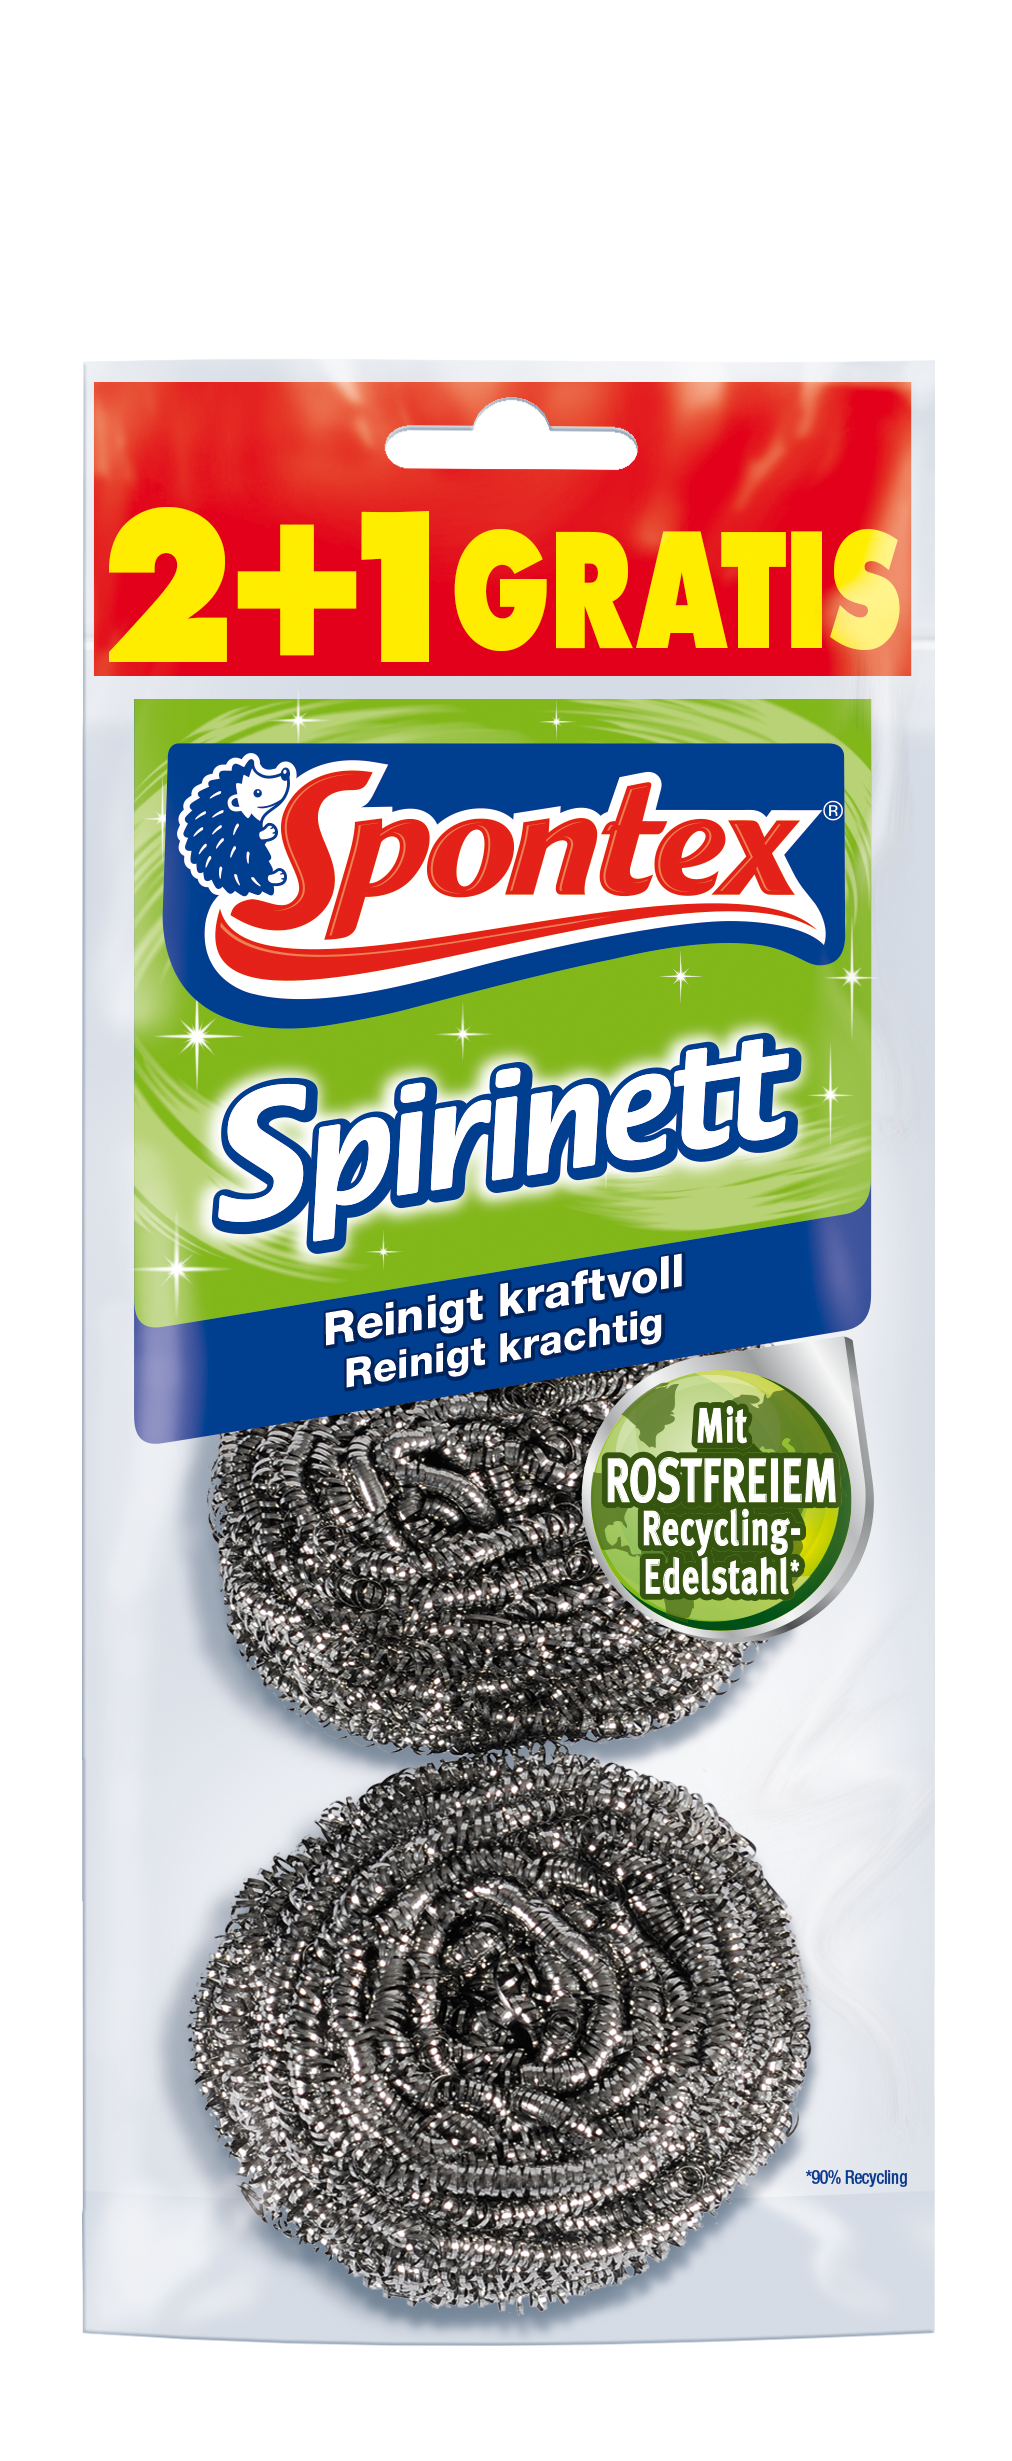 SPONTEX EDELSTAHLSPIRALE SPIRINETT 2+1